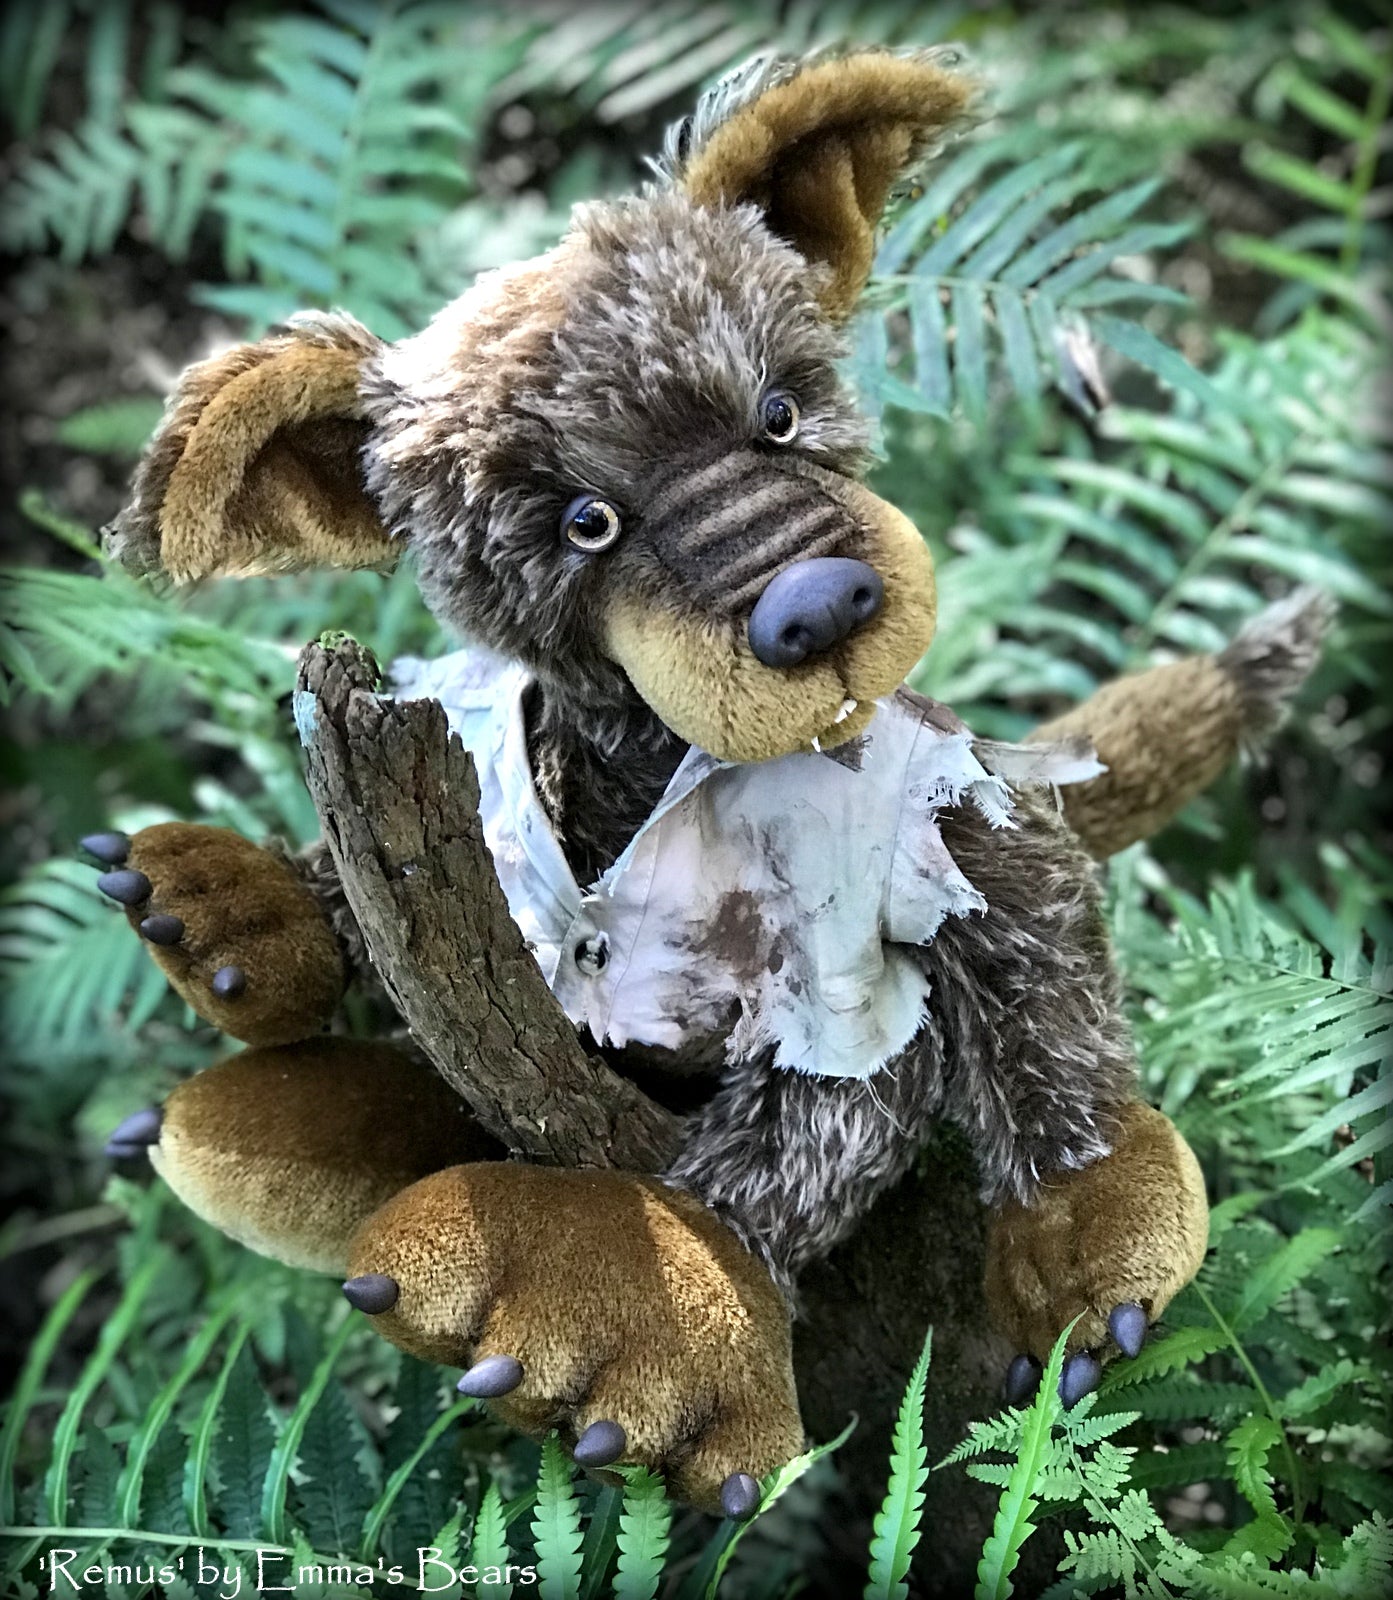 Remus - 18" mohair werewolf soft sculpture - OOAK by Emma's Bears